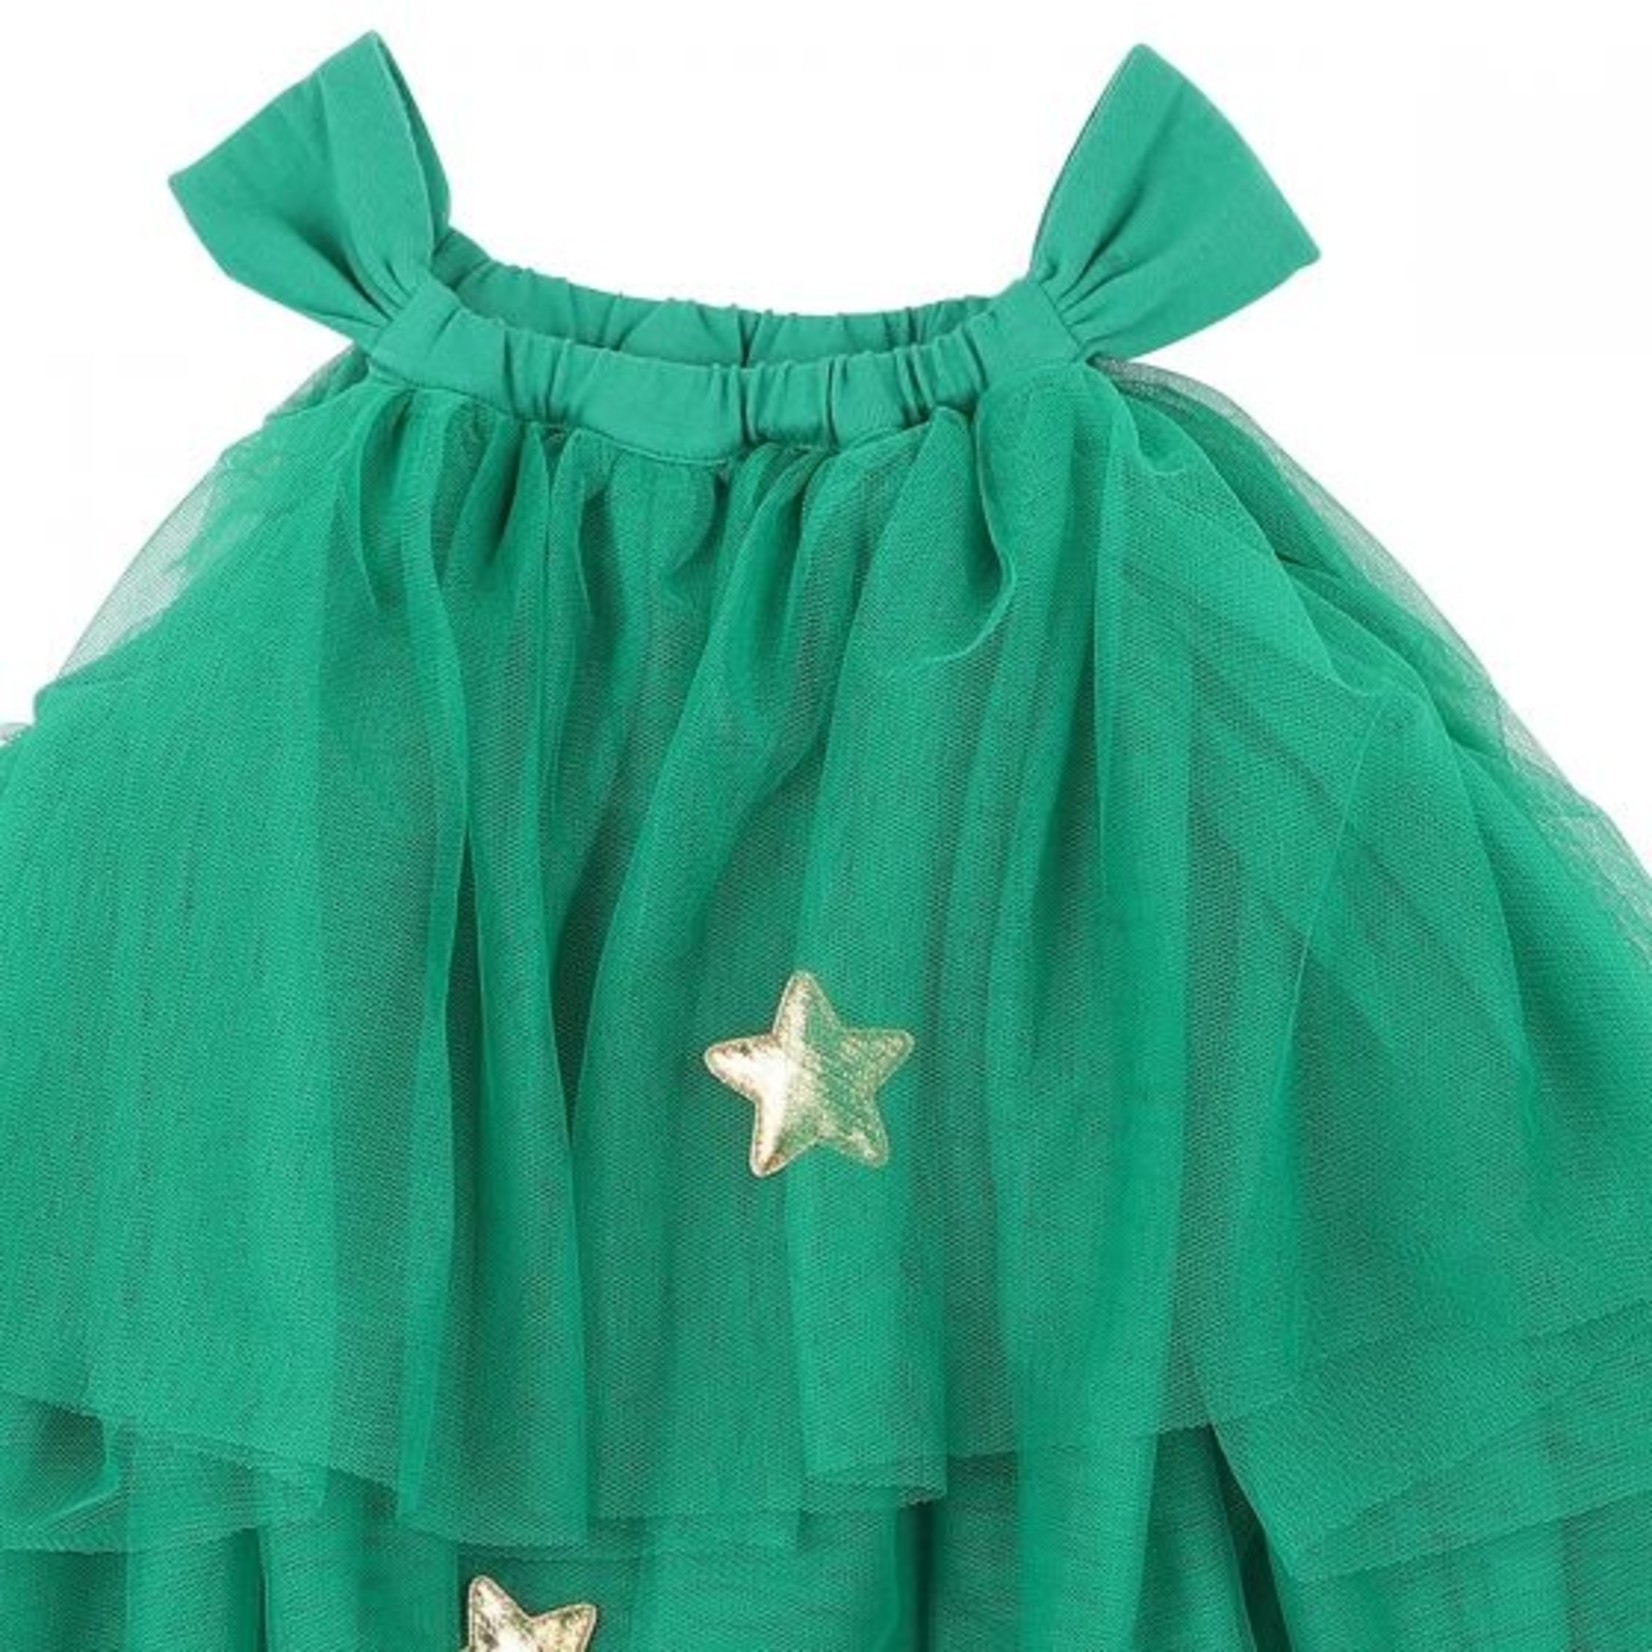 Minihaha Green Xmas Tree Dress